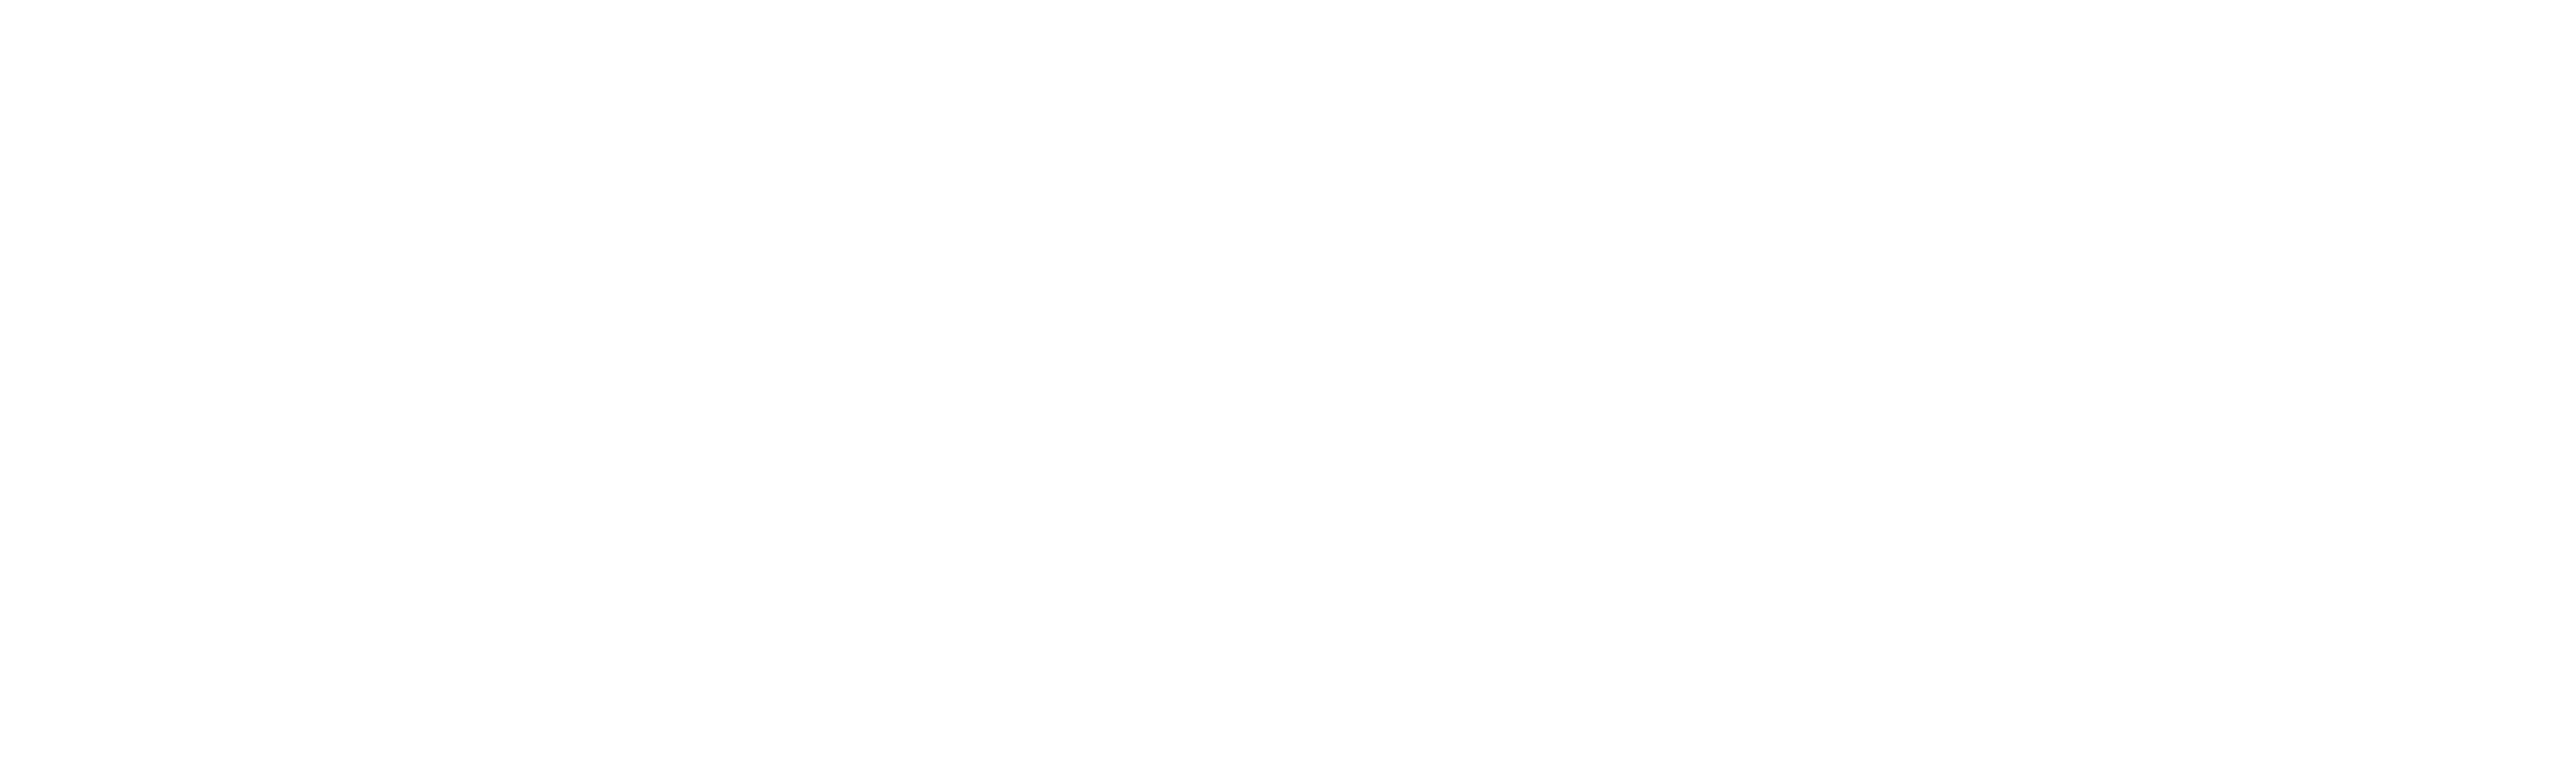 Infos Musicien·nes